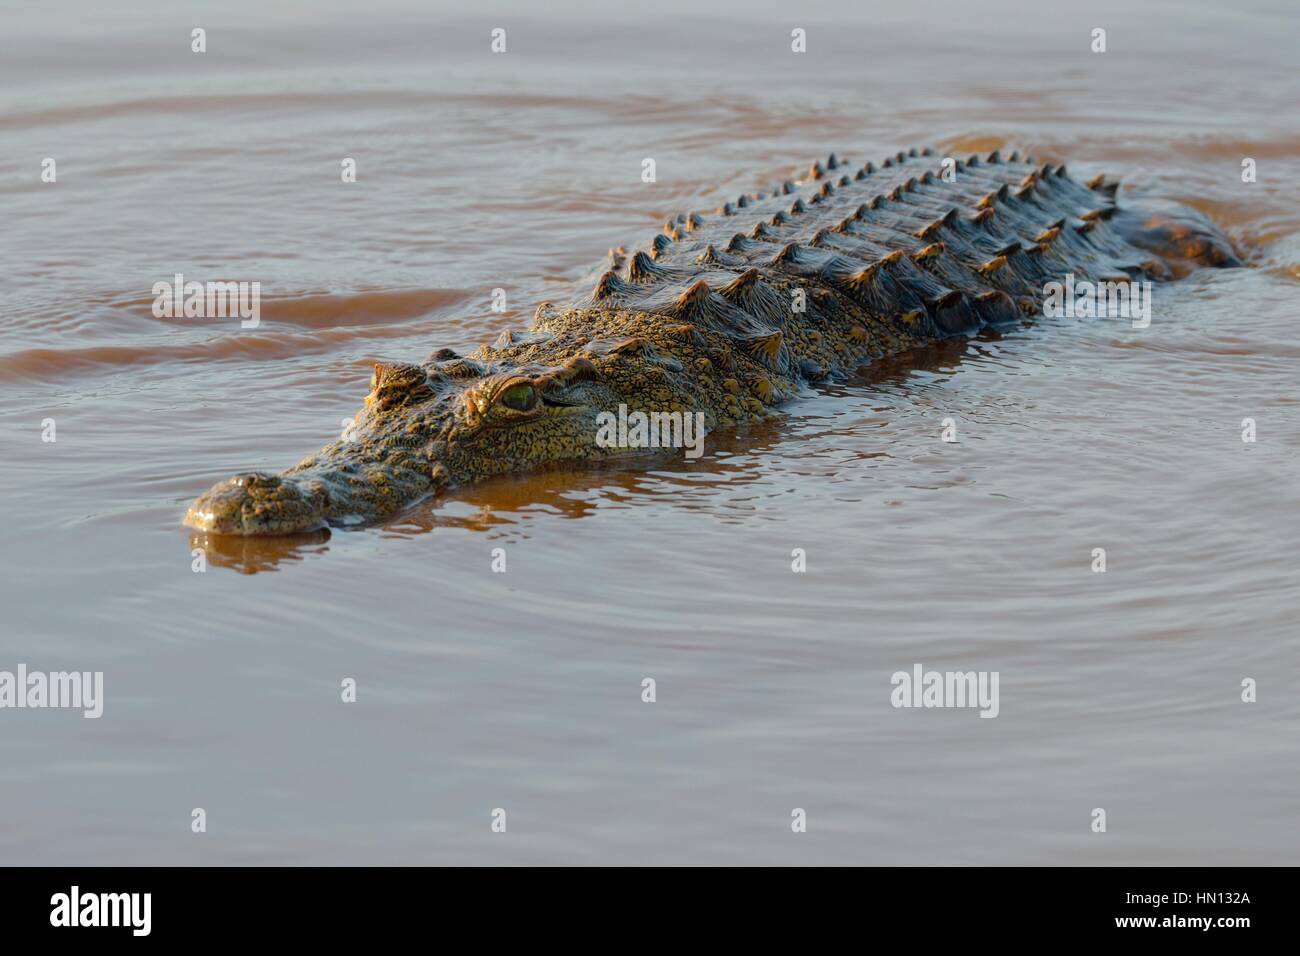 Crocodile du Nil (Crocodylus niloticus), croc revenant à l'eau après avoir avalé un poisson, barrage de Sunset, Parc national Kruger, Afrique du Sud, Afrique Banque D'Images